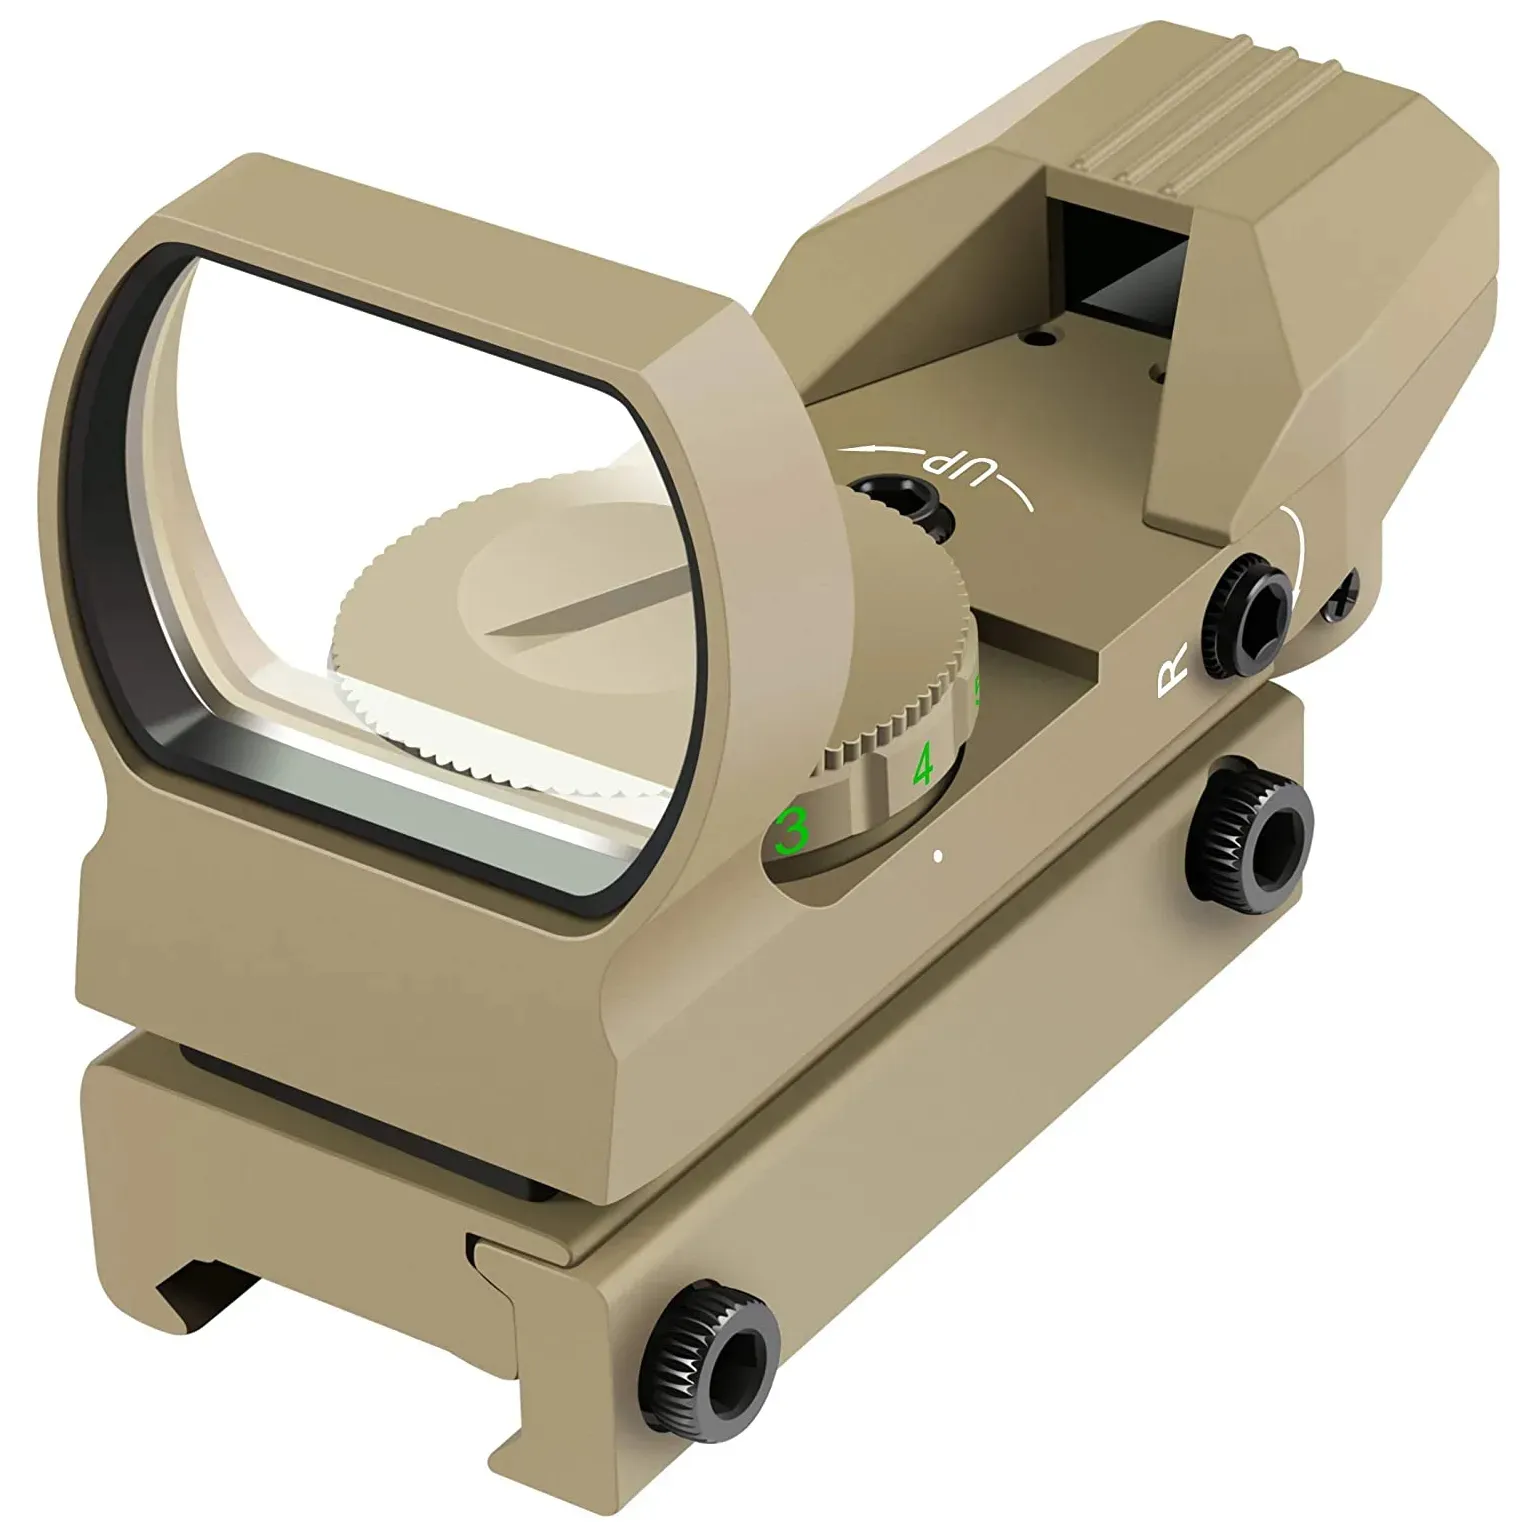 Lunette de visée tactique Optique de chasse Red Green Projected Dot Sight Reflex 4 Reticle Scope Collimator Sight pour 11mm / 20mm Rail- Tan